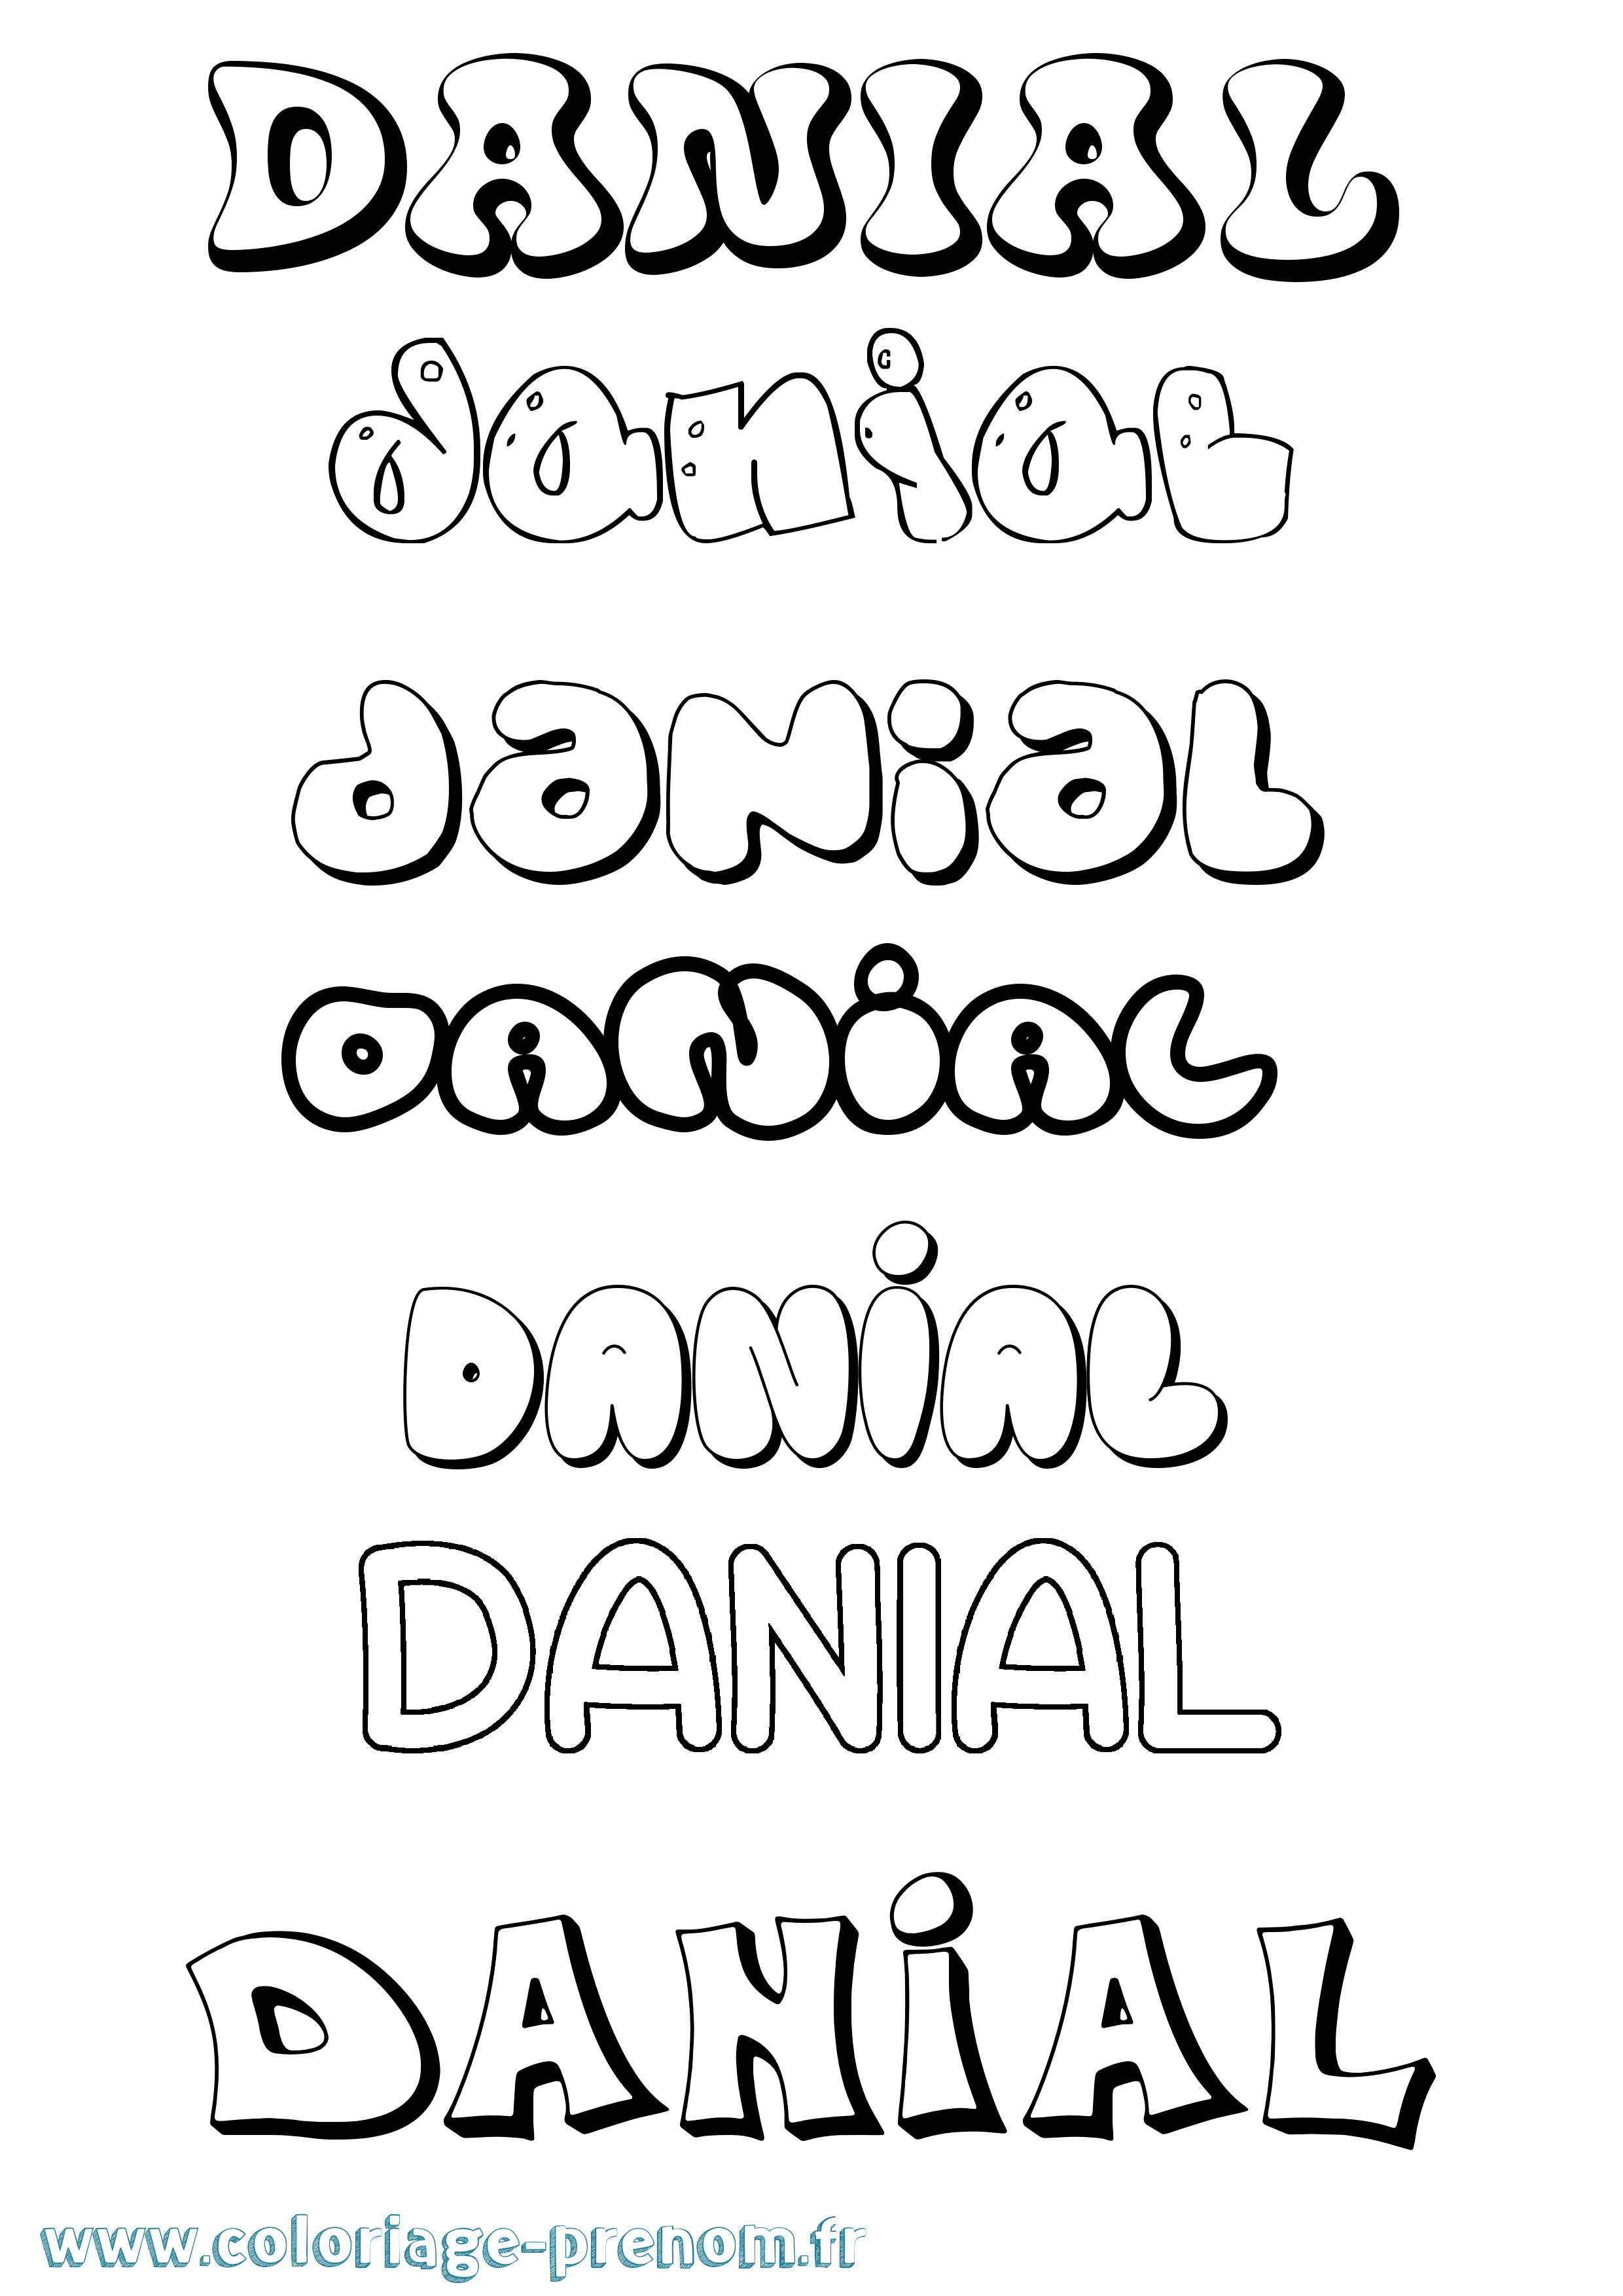 Coloriage prénom Danial Bubble